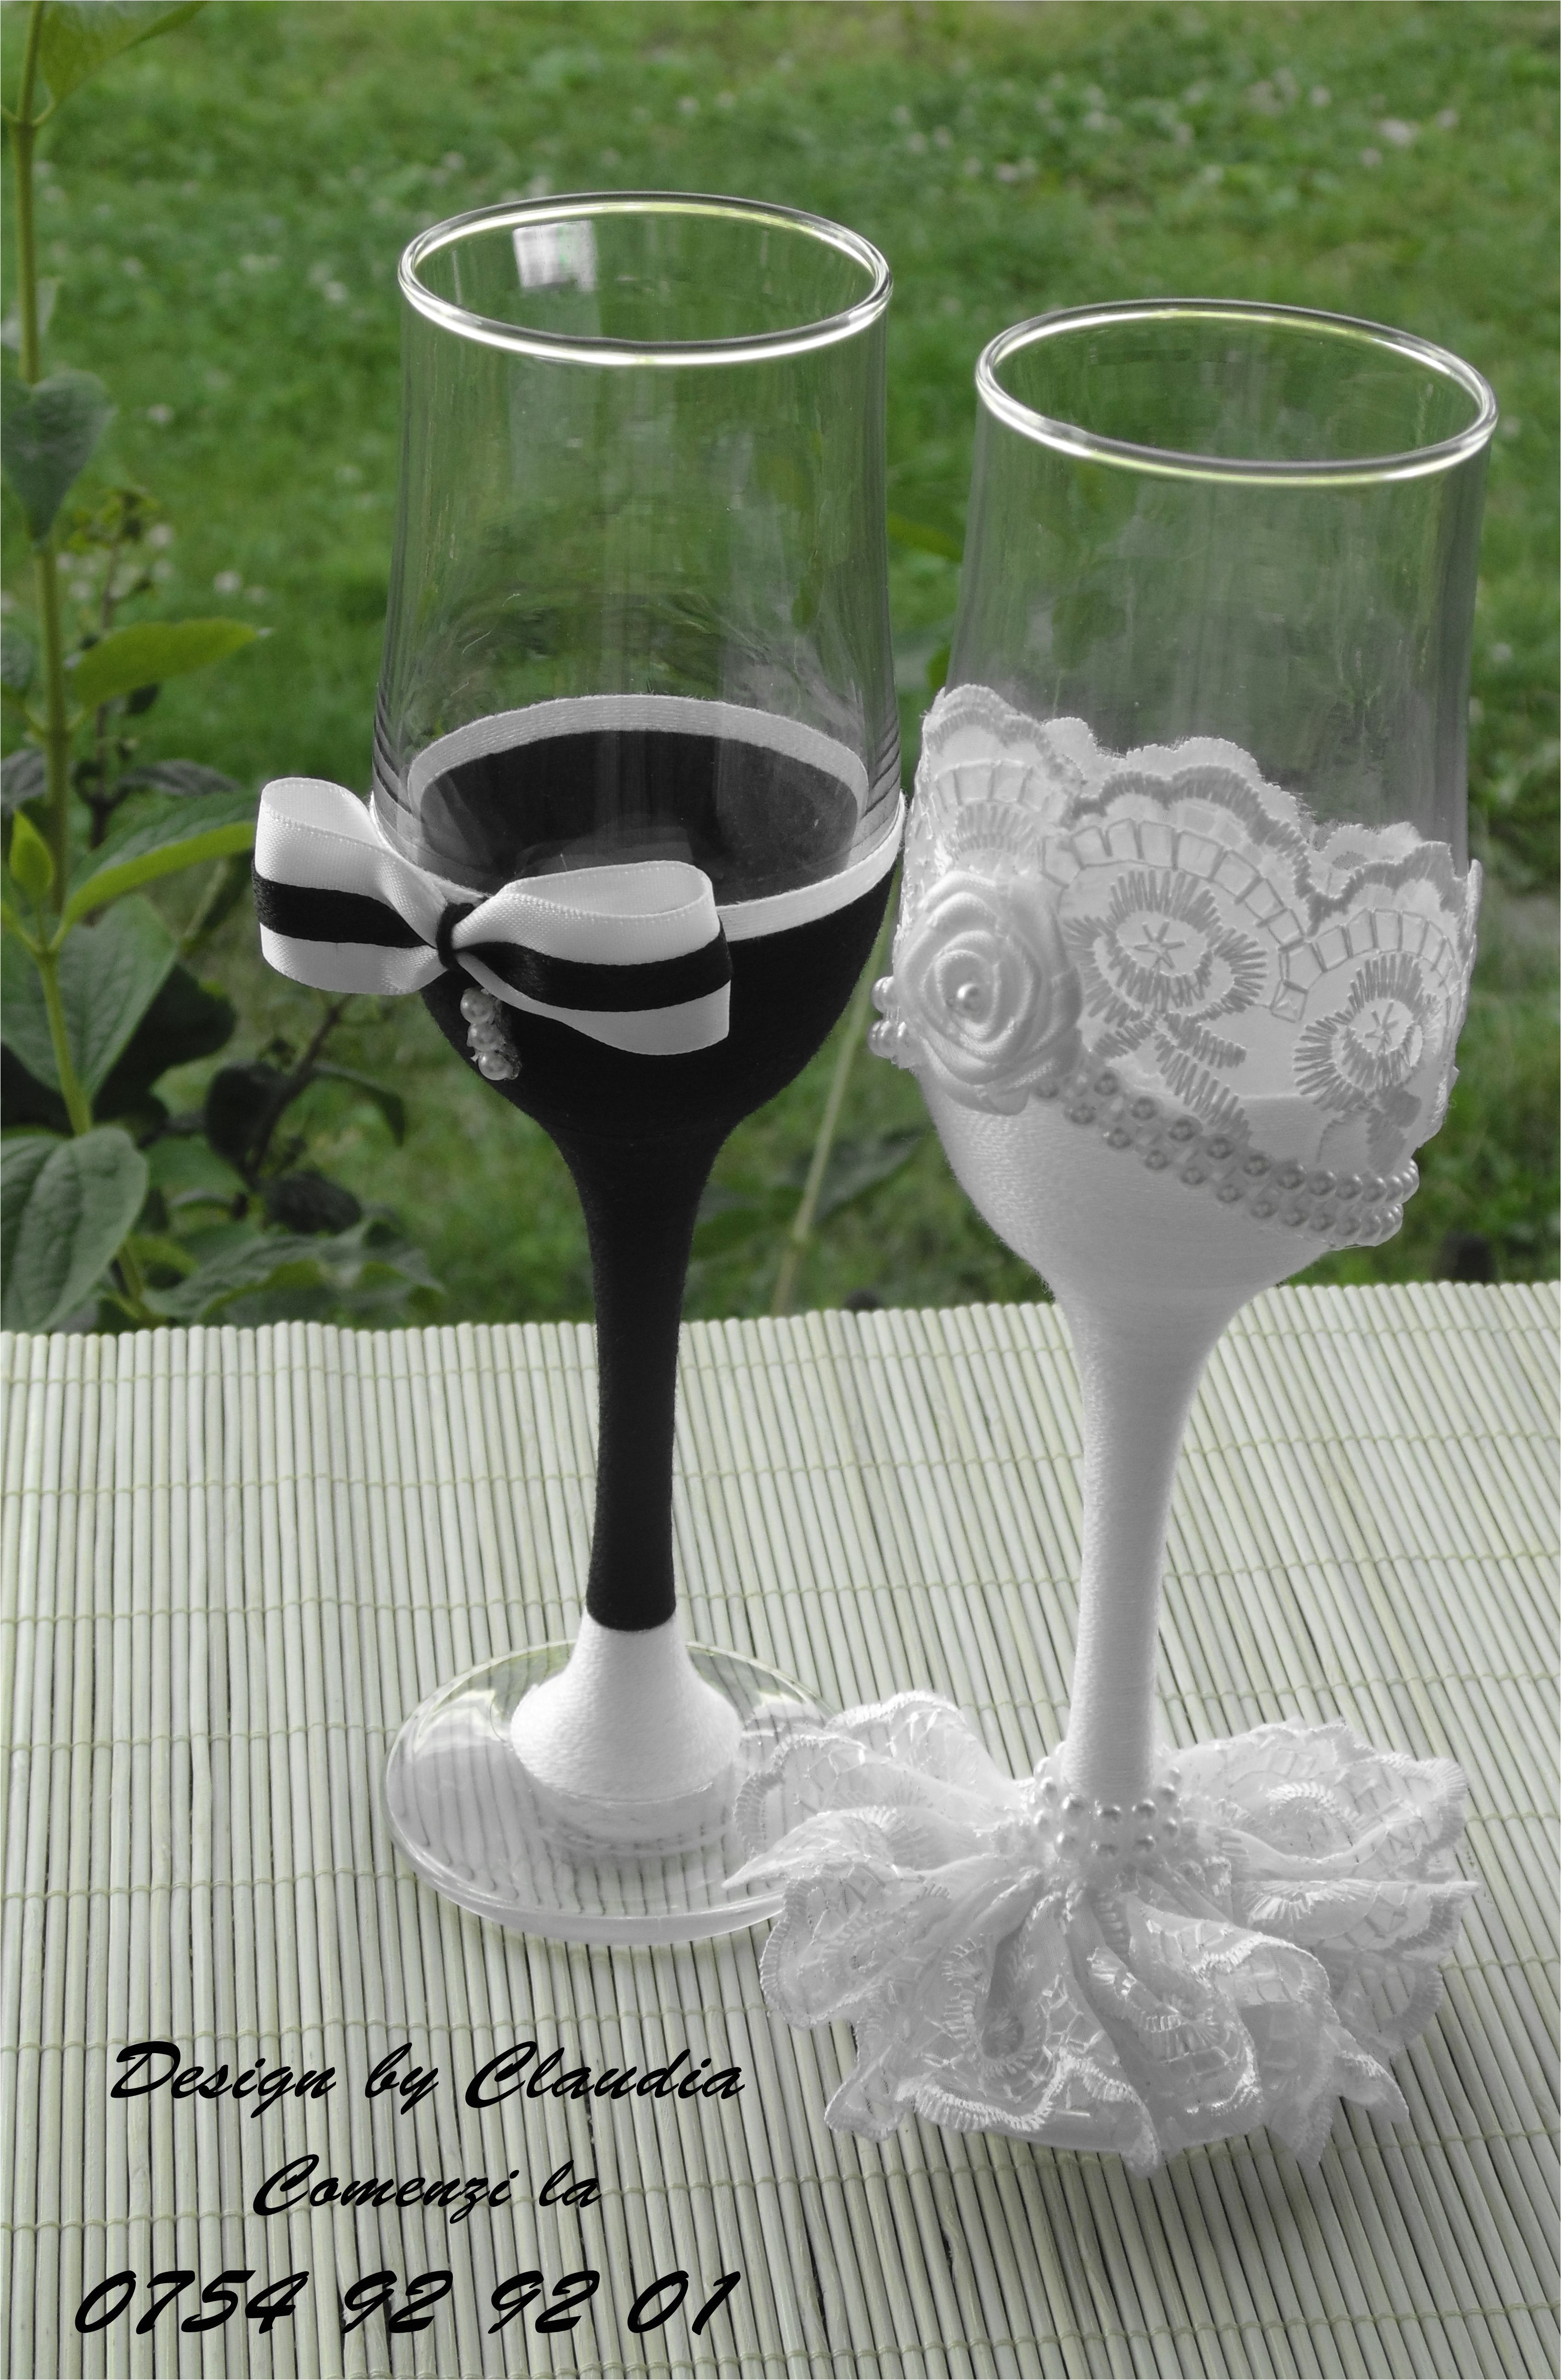 pahare decorate handmade pentru evenimente speciale pahare nunta handmade weedding glasses